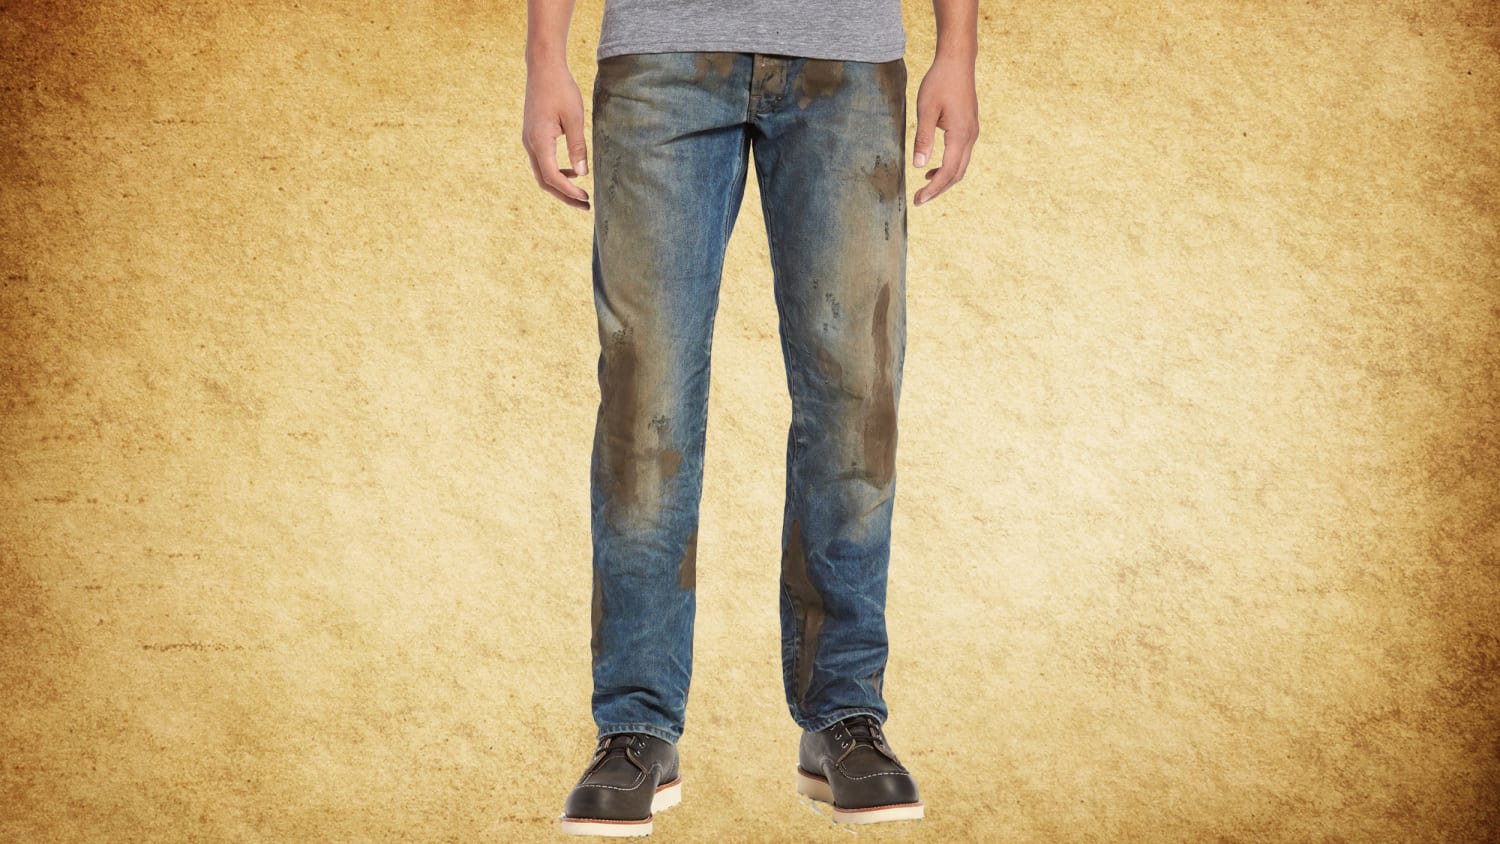 Fake Mud Jeans | vlr.eng.br